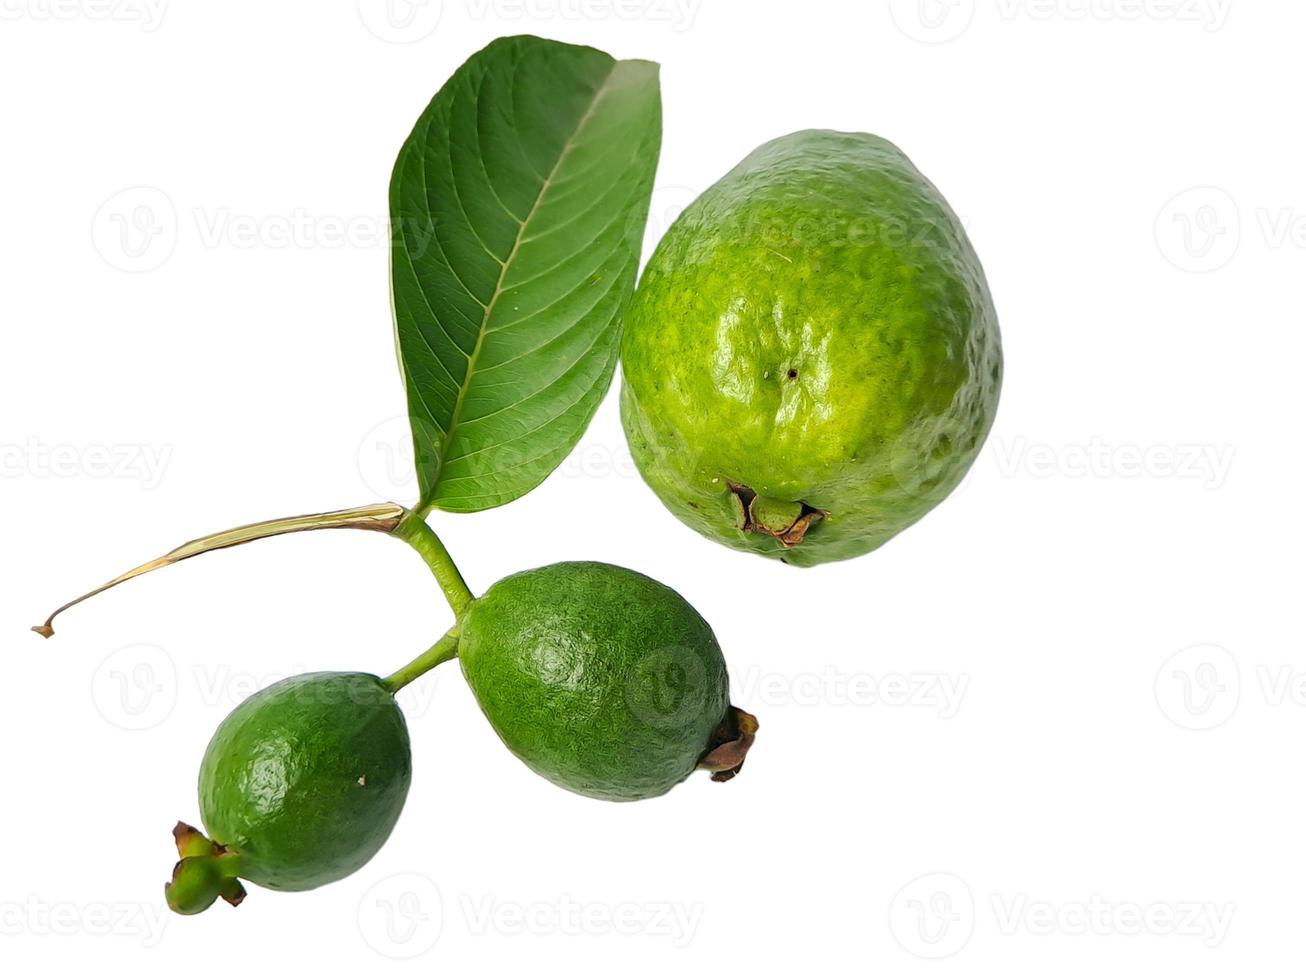 la guayaba es una fruta tropical común cultivada en muchas áreas tropicales y subtropicales, guayaba común psidium guayaba, guayaba limón, guayaba manzana foto